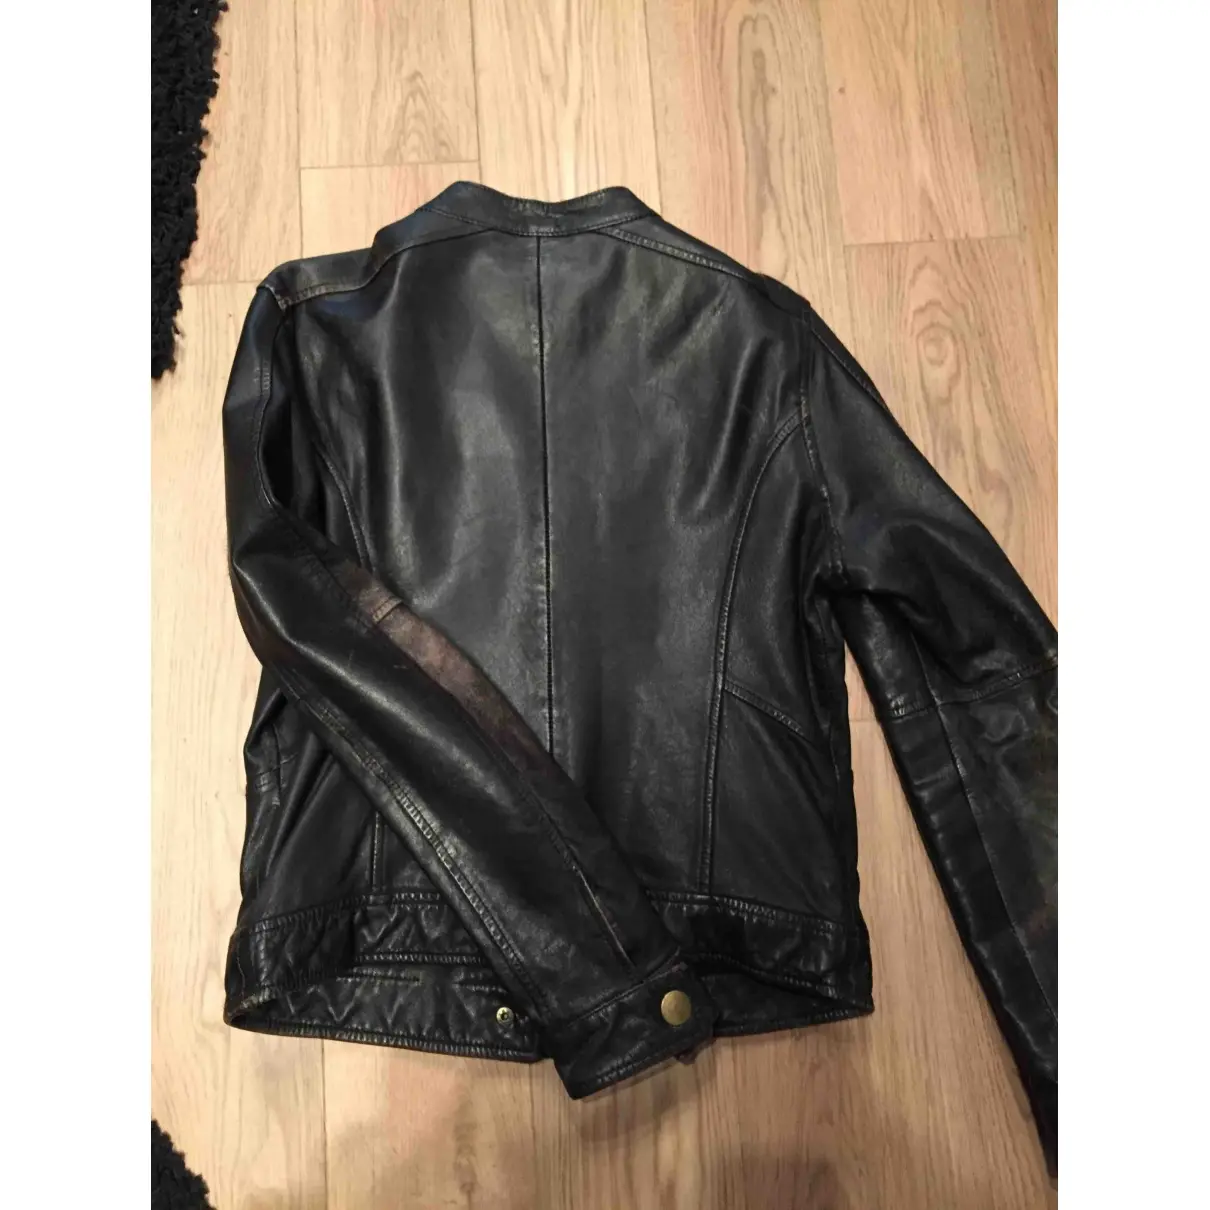 Chevignon Exotic leathers short vest for sale